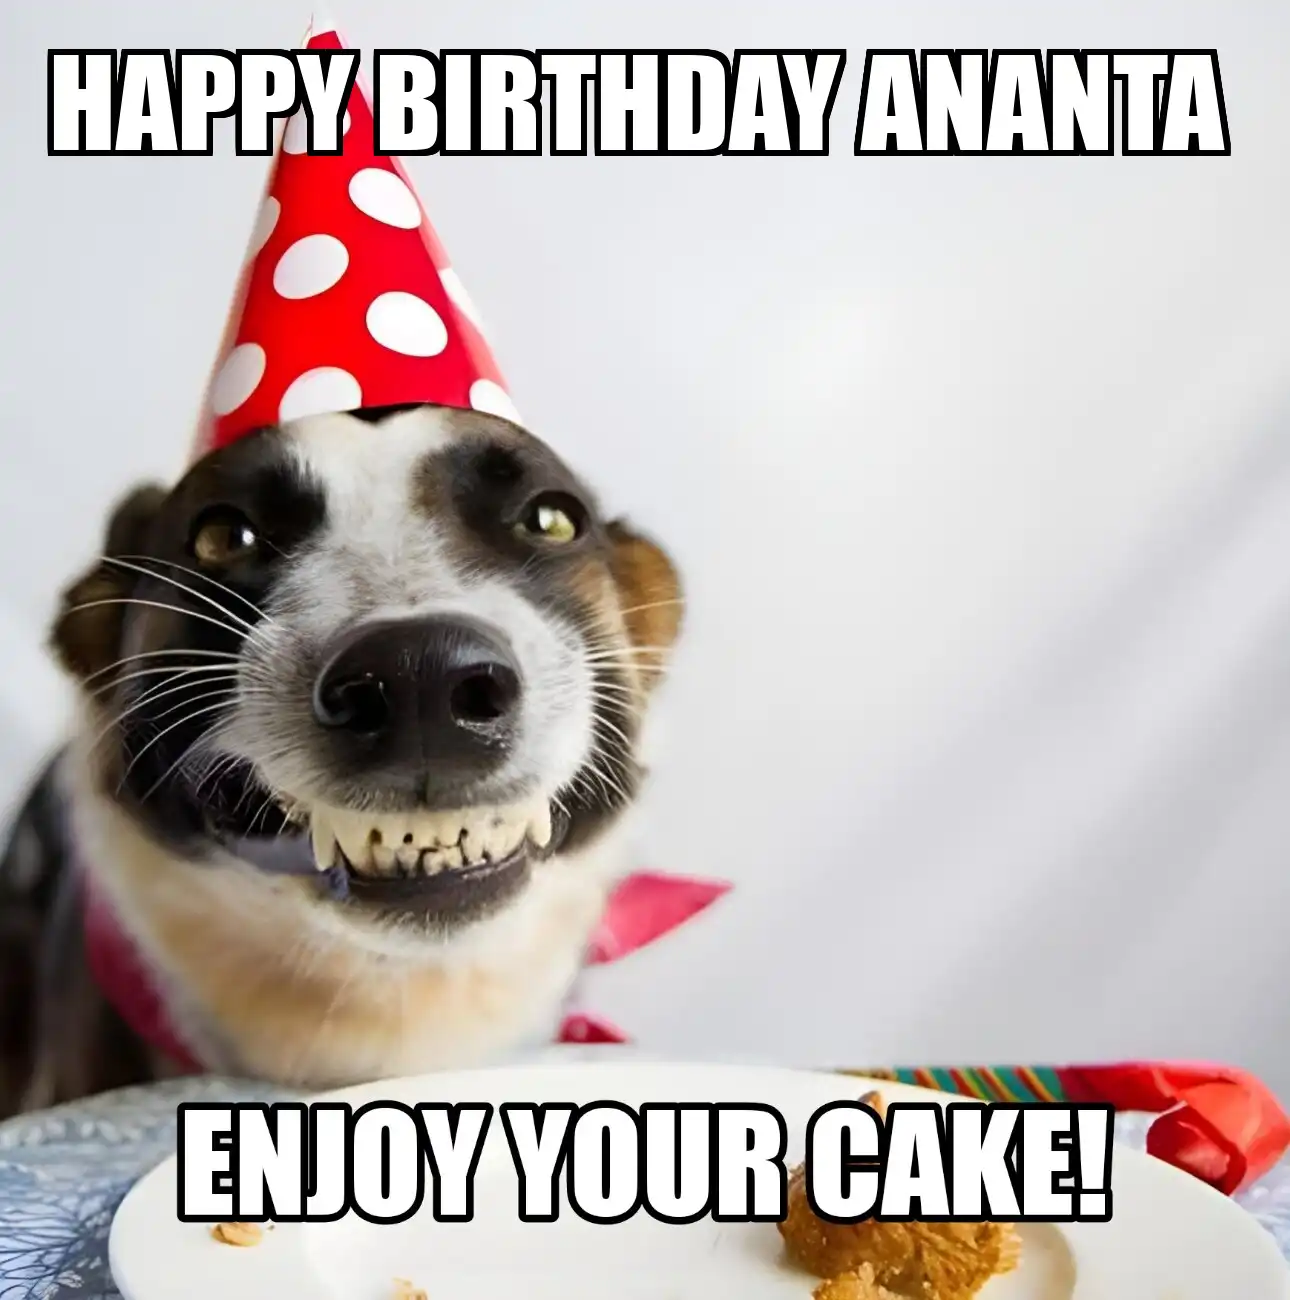 Happy Birthday Ananta Enjoy Your Cake Dog Meme